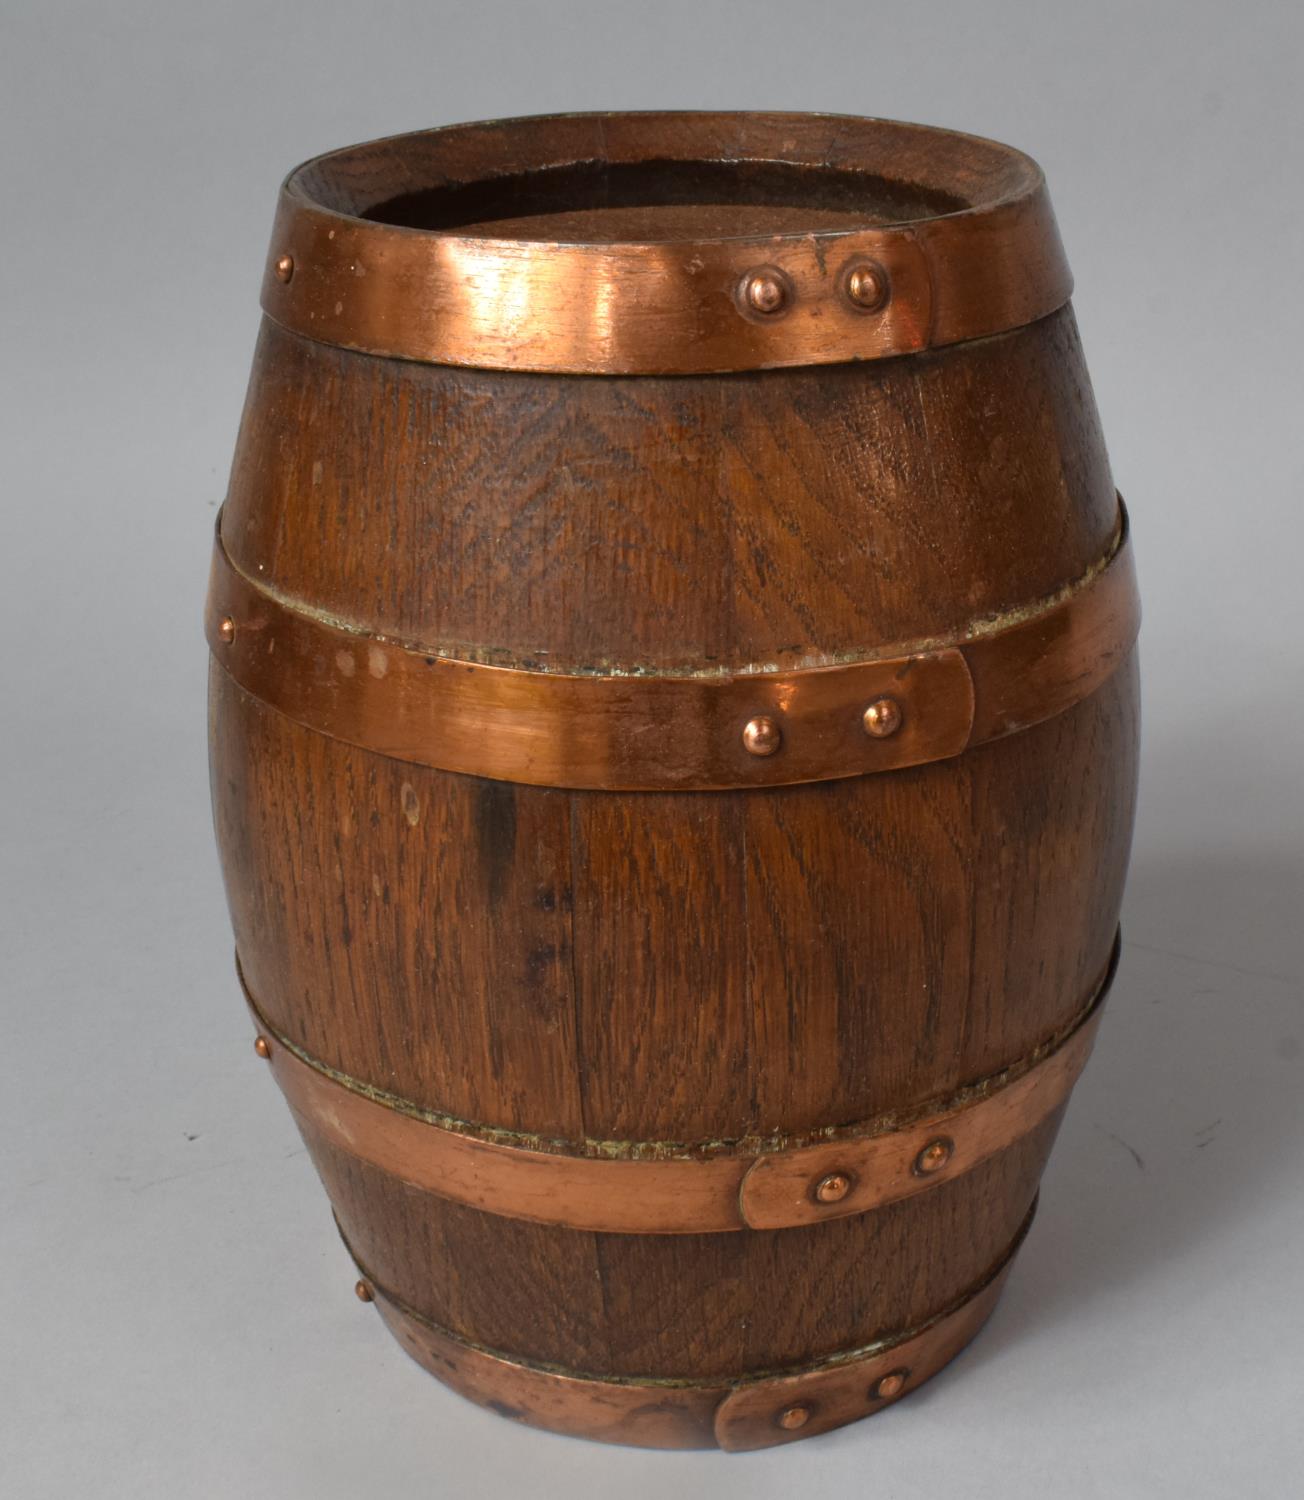 A Copper Banded Oak Barrel, 20cm High - Image 2 of 2